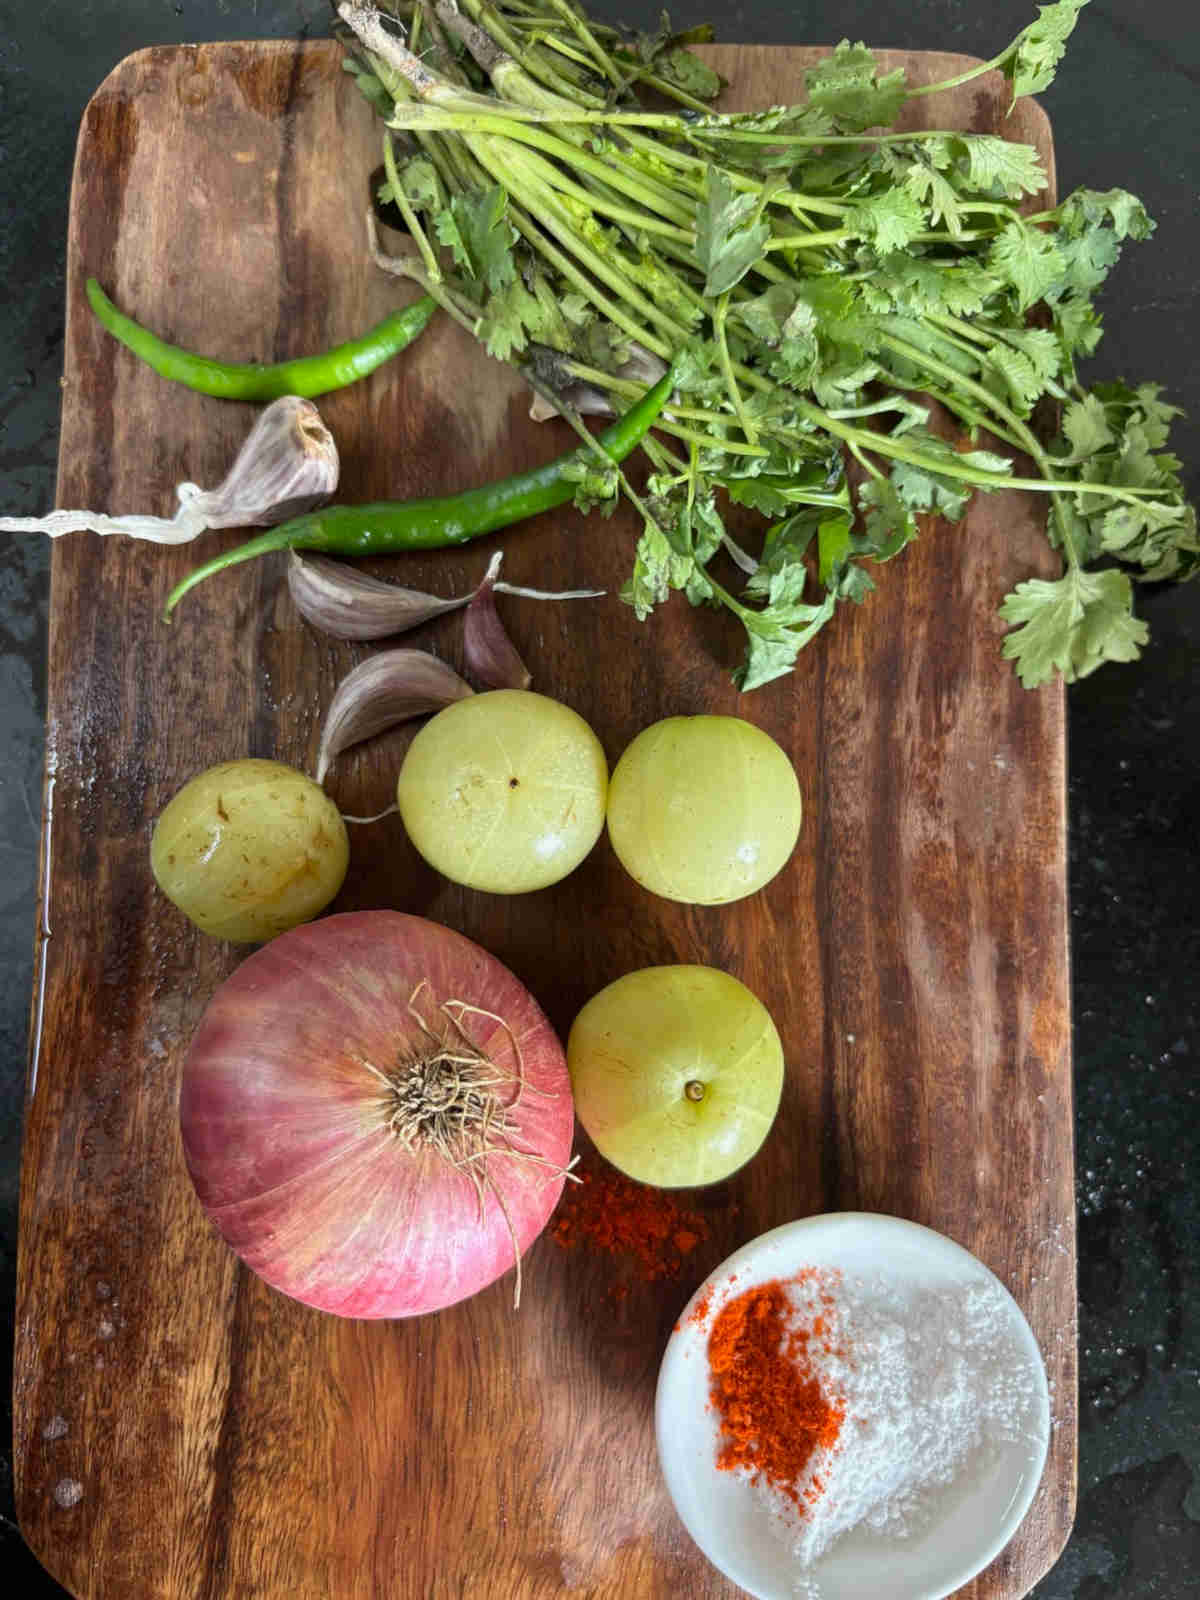 ingredients for amla chutney Indian gooseberry chutney